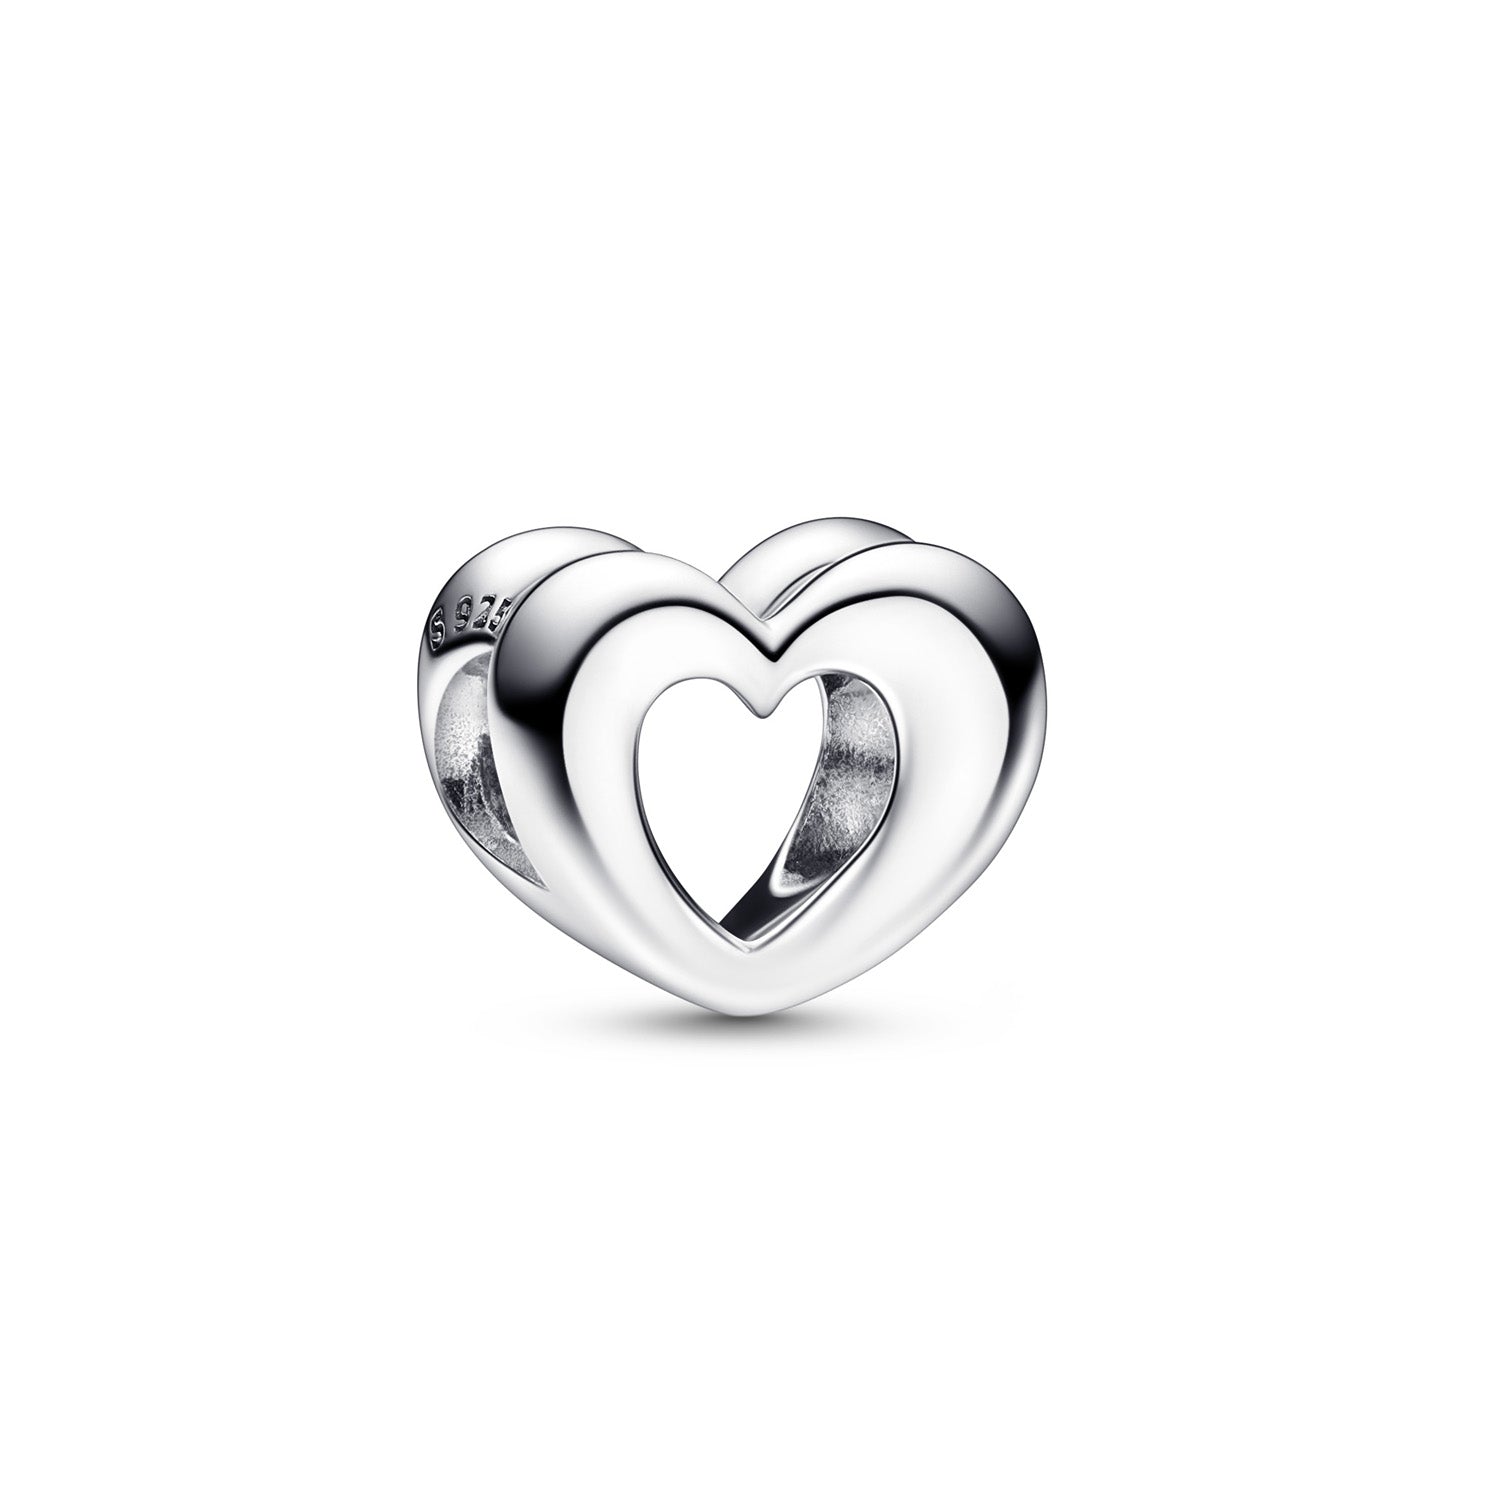 Billede af Pandora - Åben hjerte charm sølv sterlingsølv